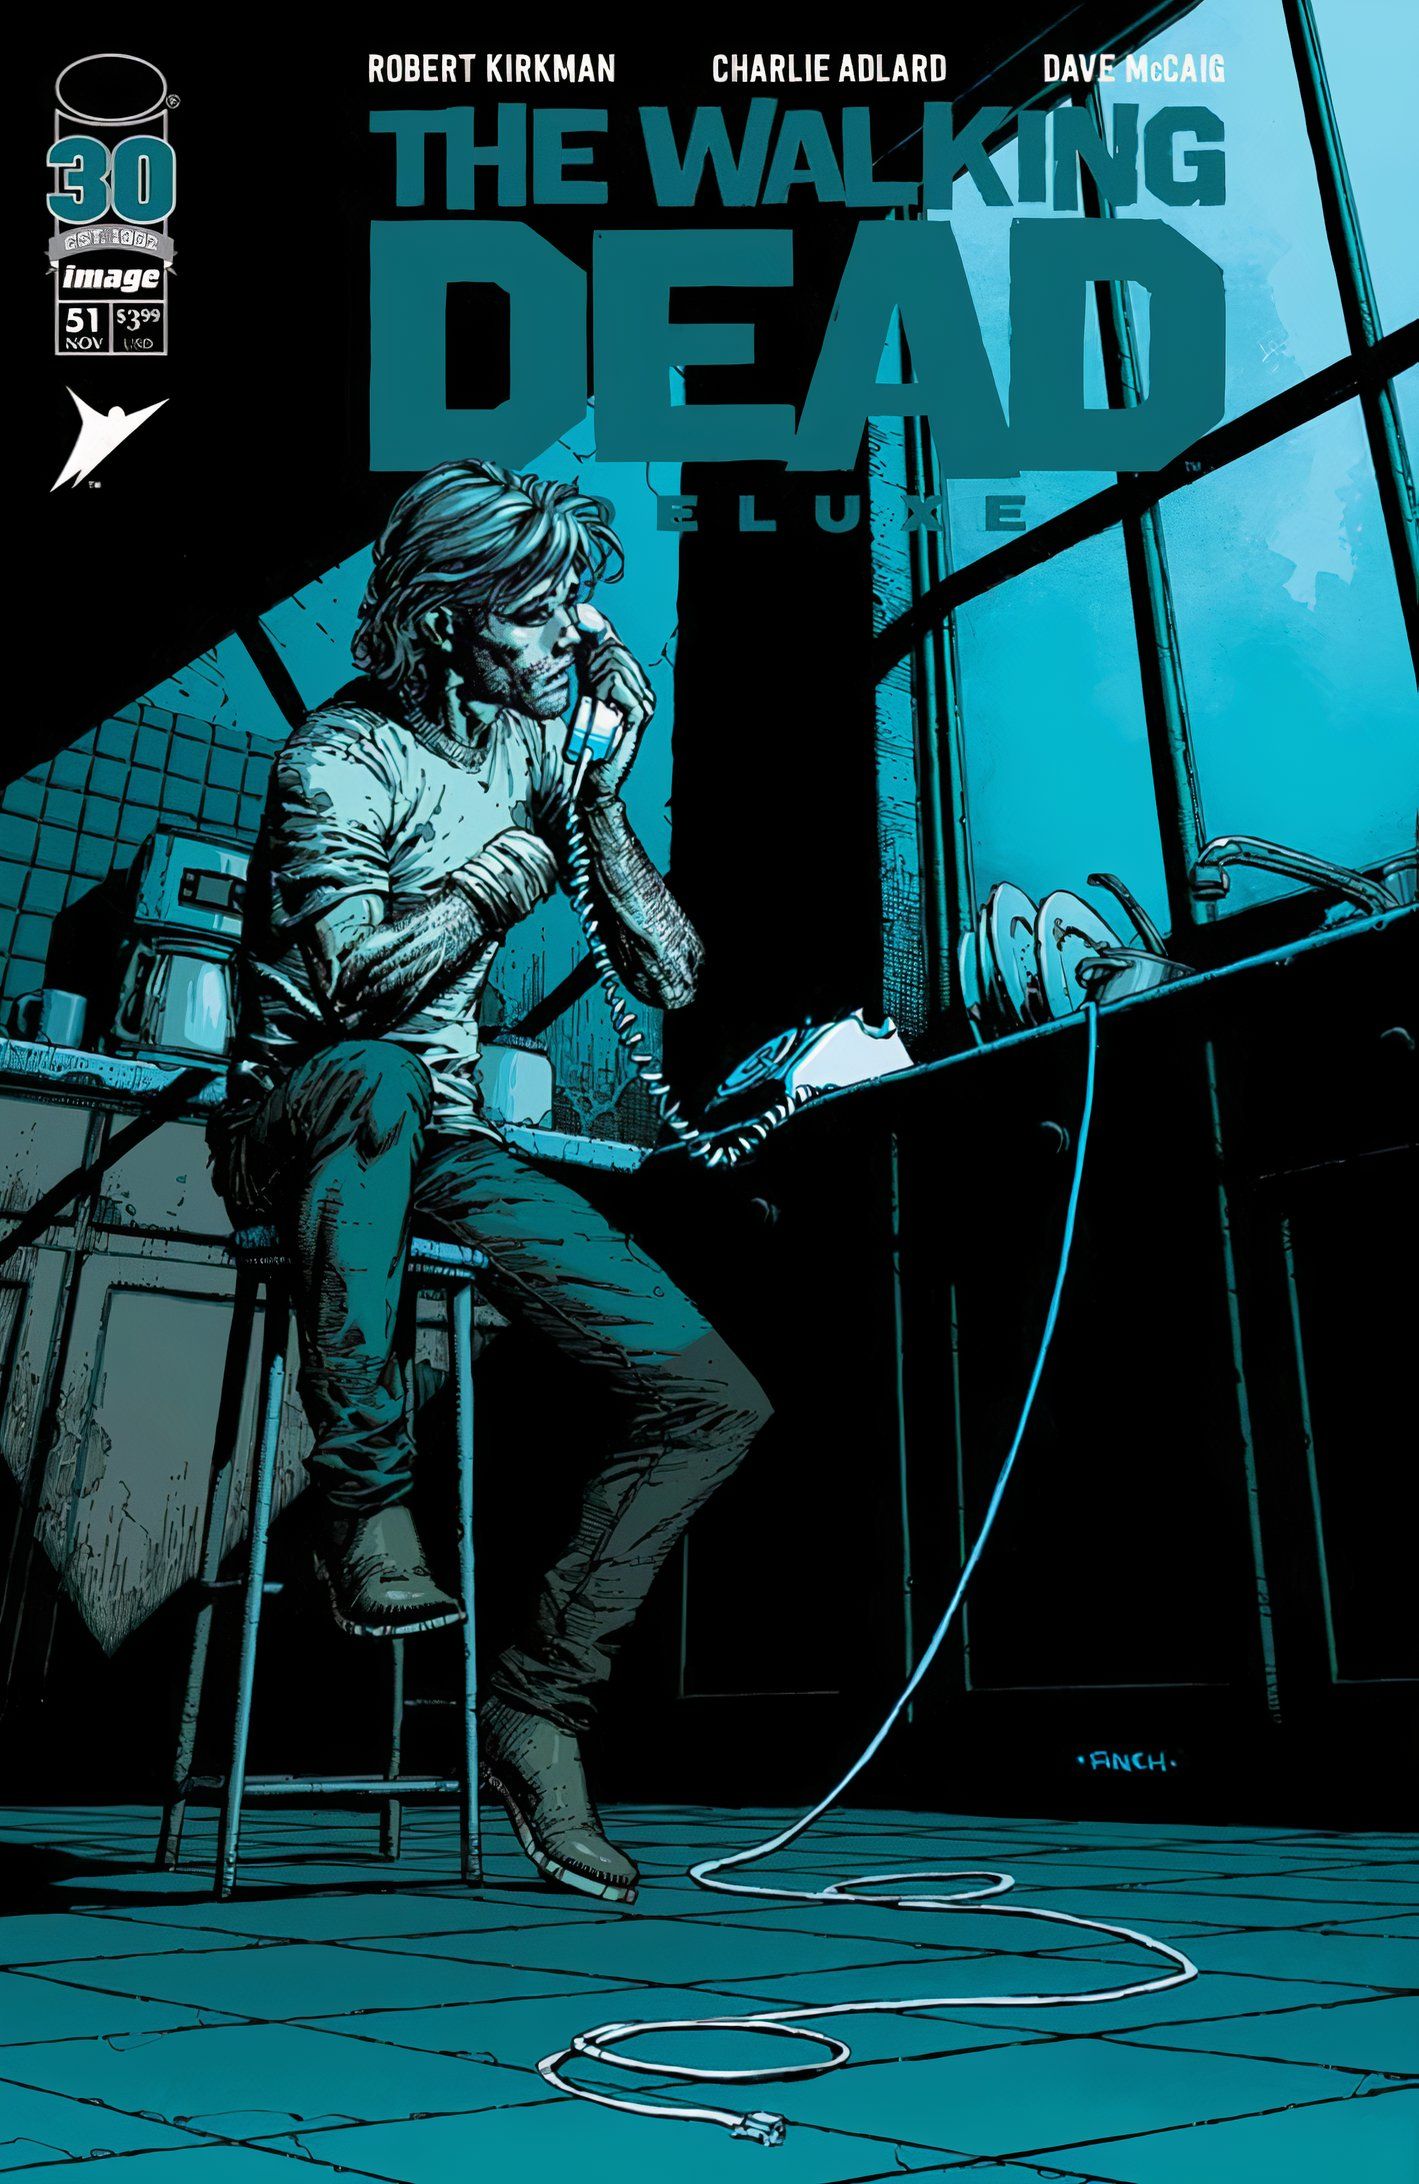 Capa de The Walking Dead Deluxe #51, com Rick na cozinha de uma casa em ruínas falando ao telefone quebrado